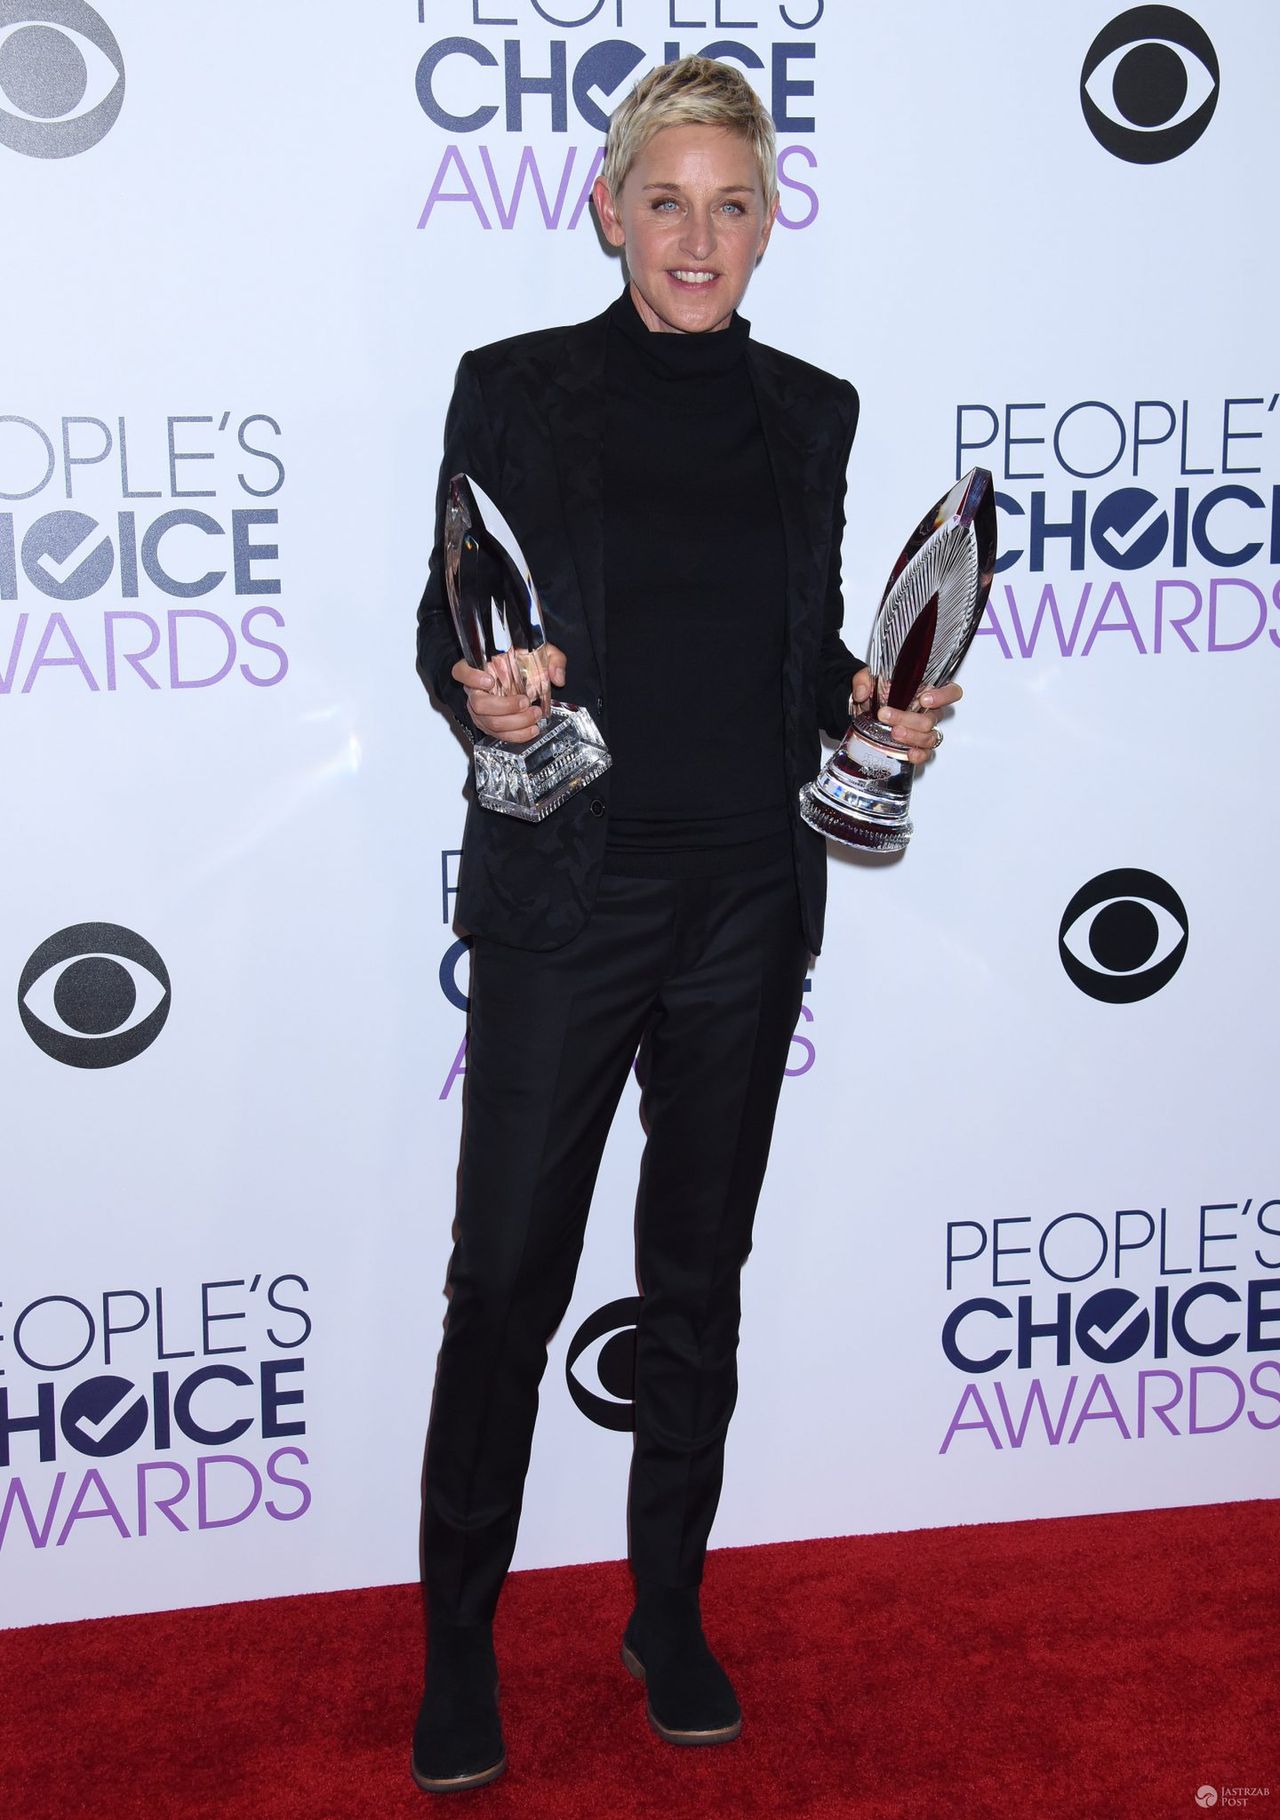 Ellen DeGeneres -
People's Choice Awards 2016